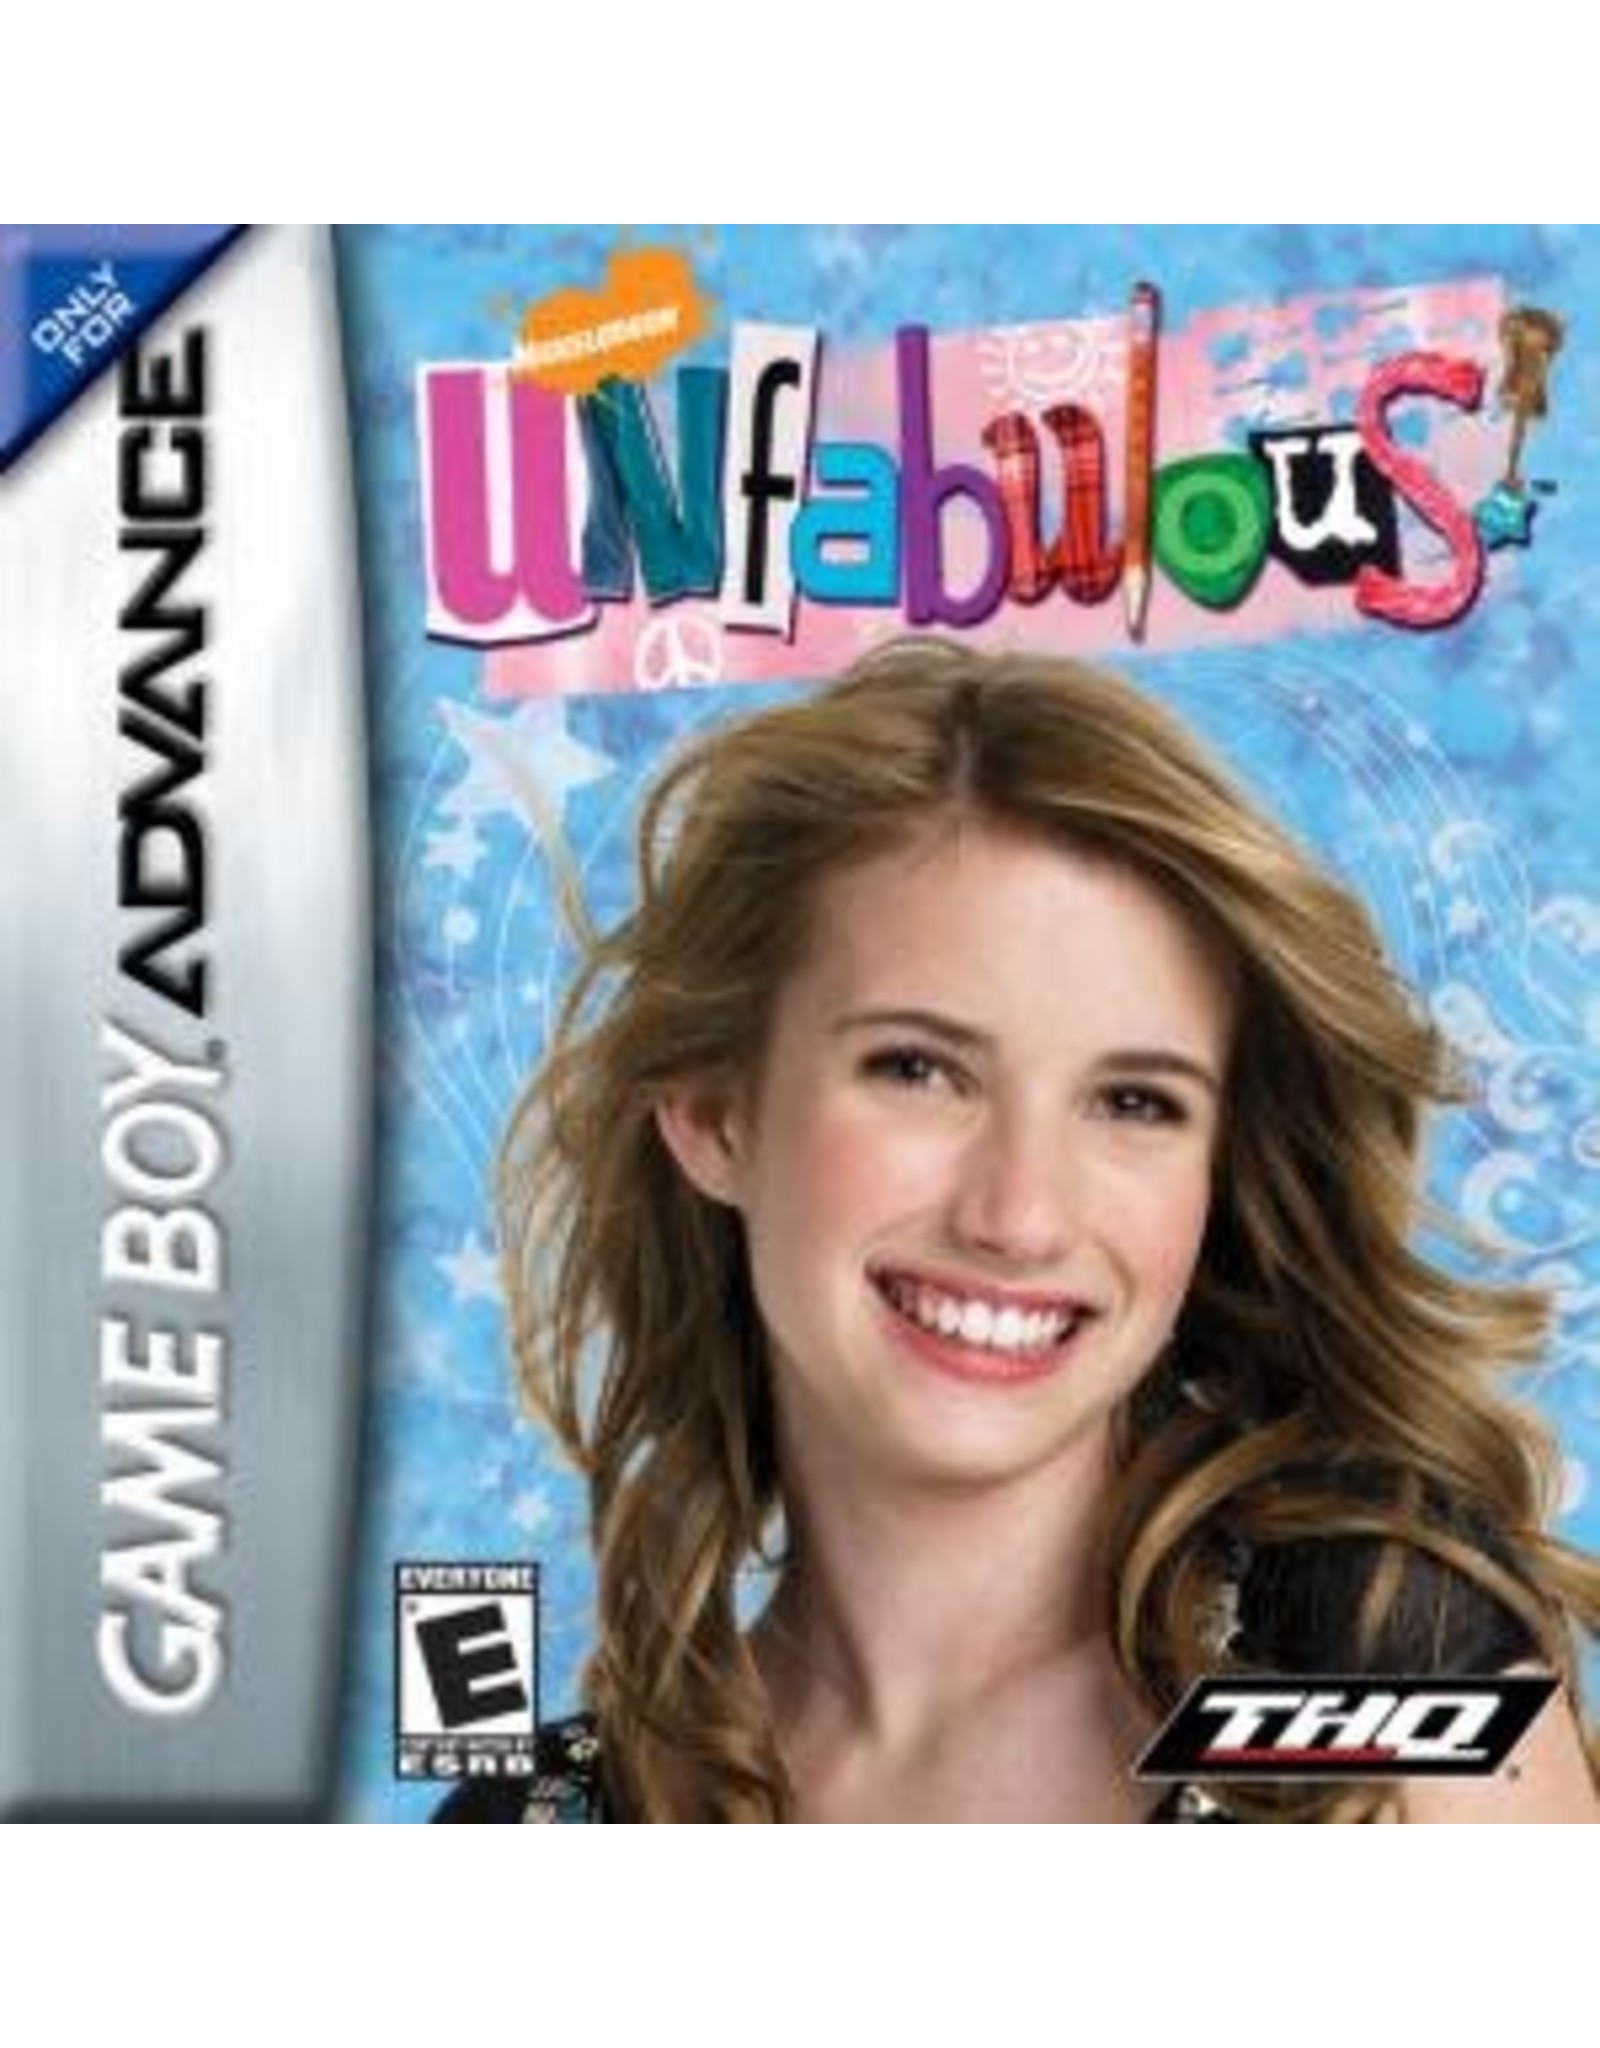 Game Boy Advance Unfabulous (Cart Only)